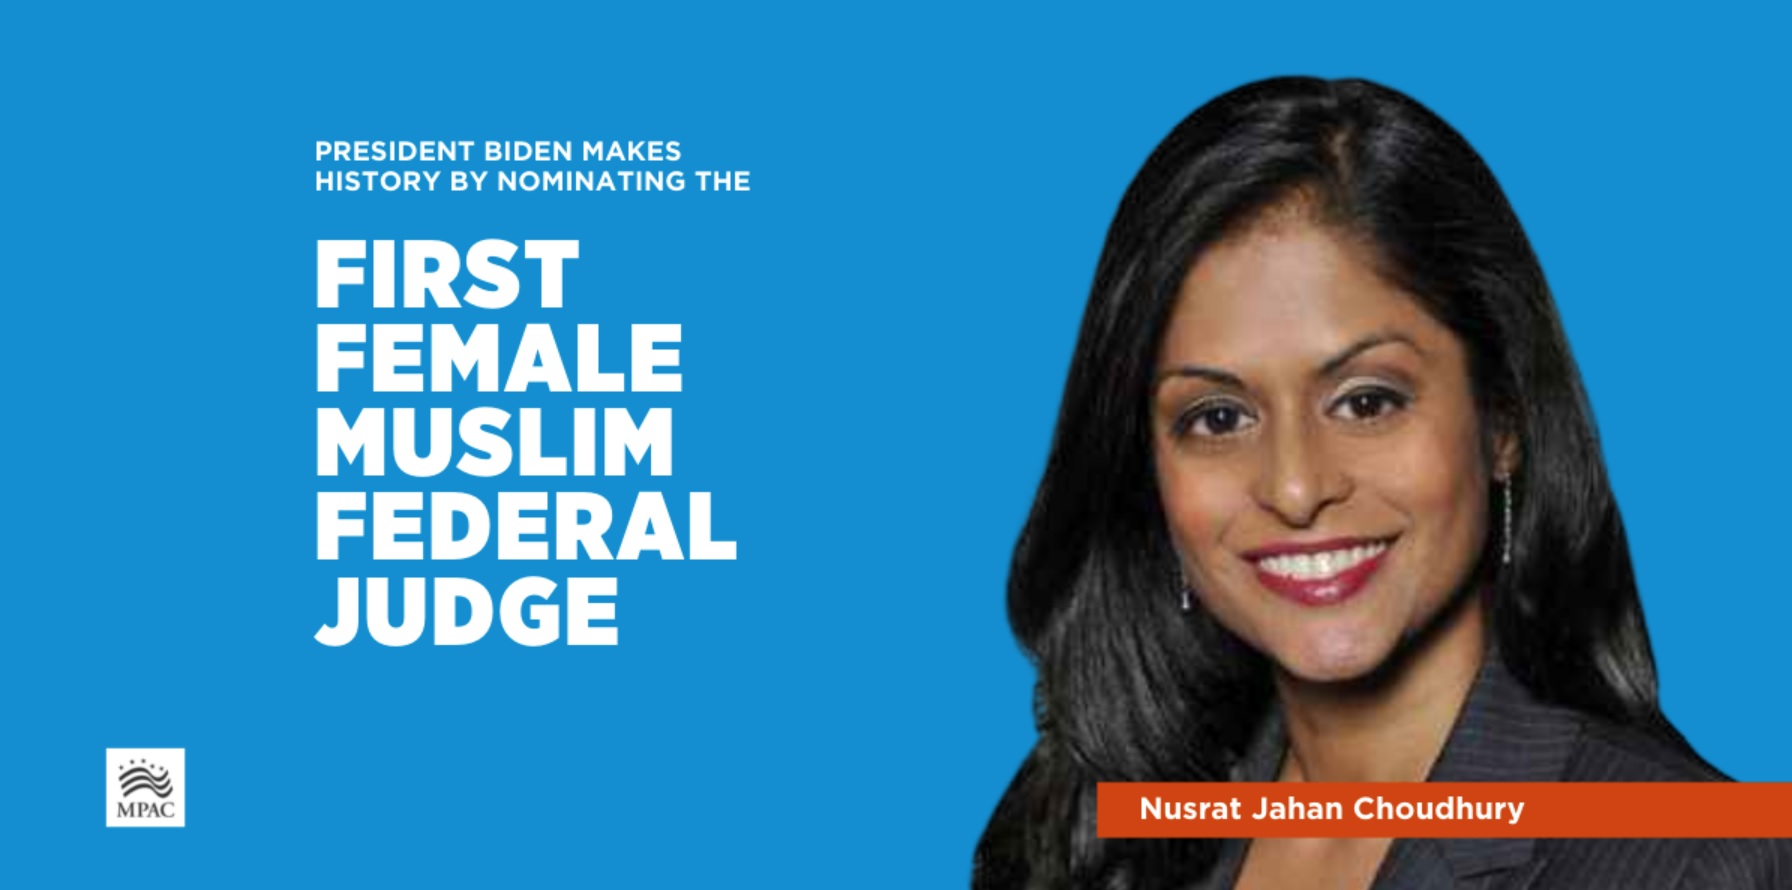  نصرت تشودري أول مسلمة تُرشح لمنصب القضاء الفيدرالي الأميركي